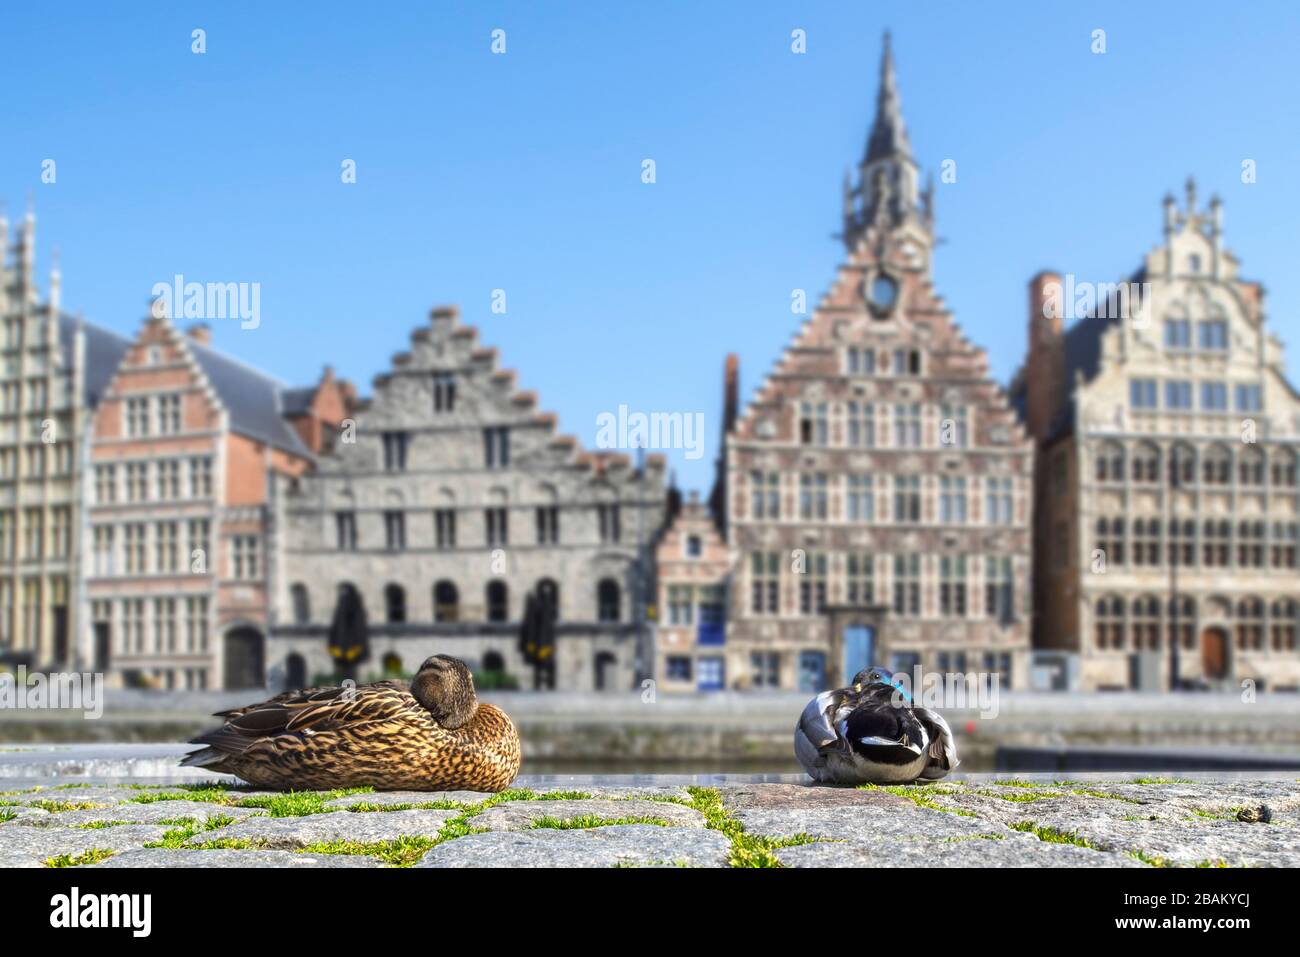 Wildes Entenpaar, das sich aufgrund der COVID-19 von 2020 / Coronavirus / Corona-Virus-Pandemie in Ostflandern, Belgien, in der menschenleeren flämischen Stadt Gent ausruht Stockfoto